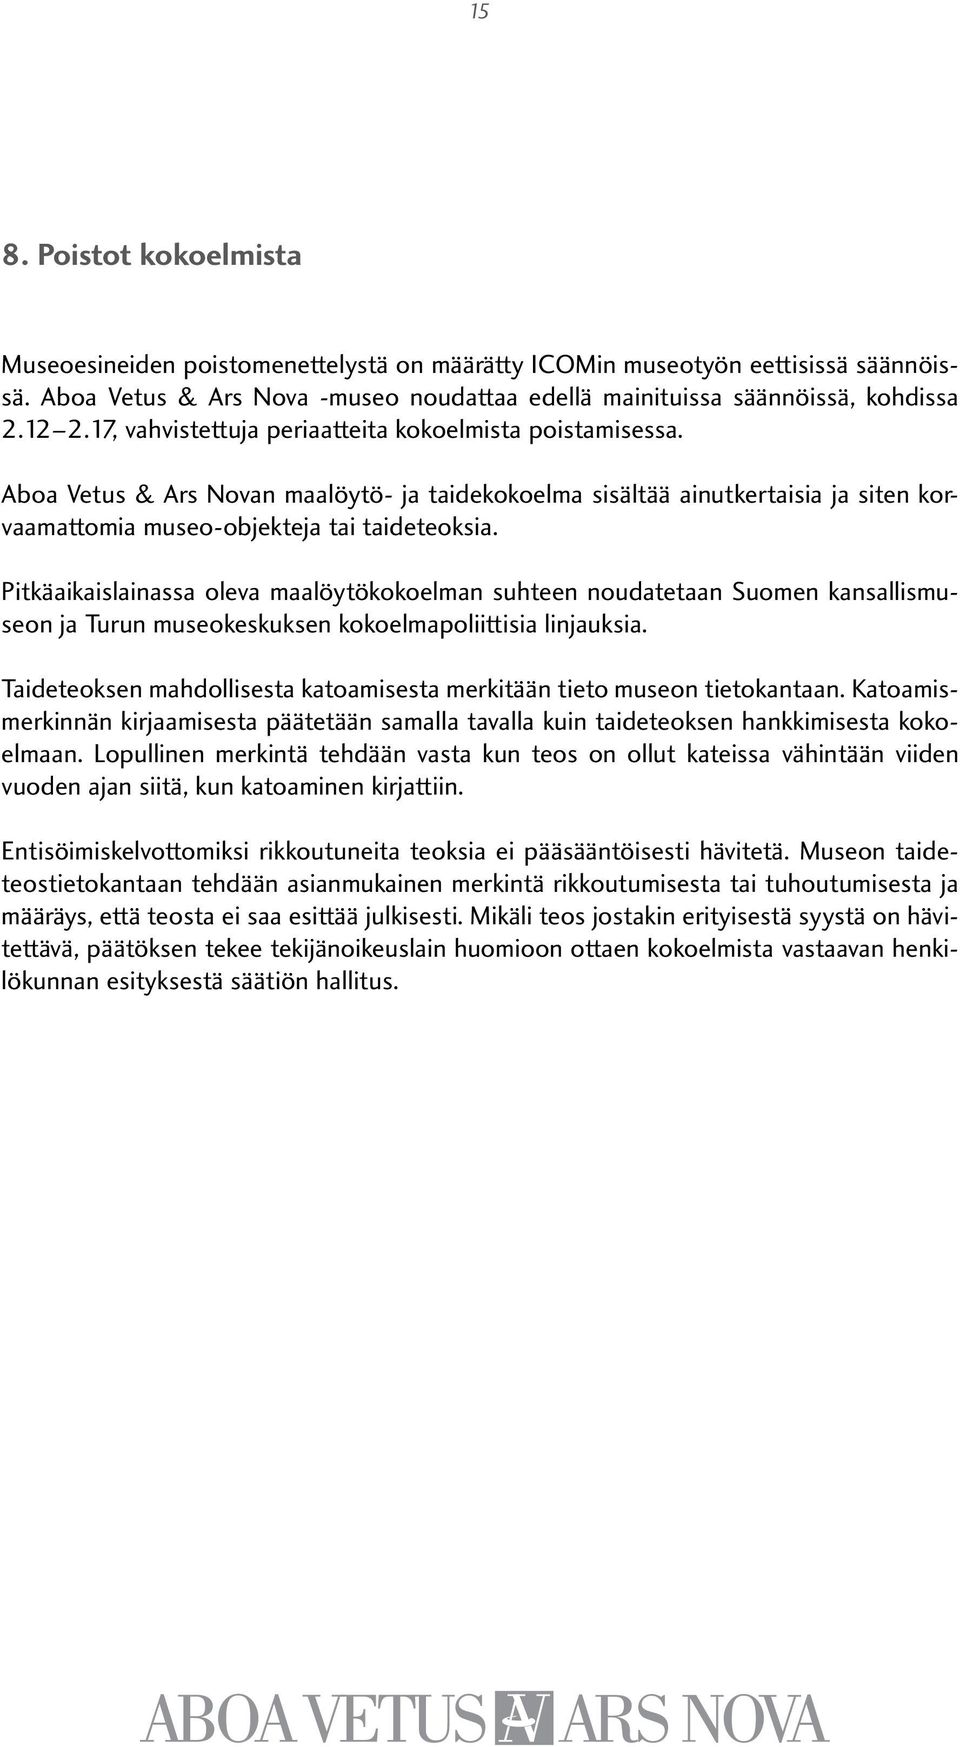 Pitkäaikaislainassa oleva maalöytökokoelman suhteen noudatetaan Suomen kansallismuseon ja Turun museokeskuksen kokoelmapoliittisia linjauksia.